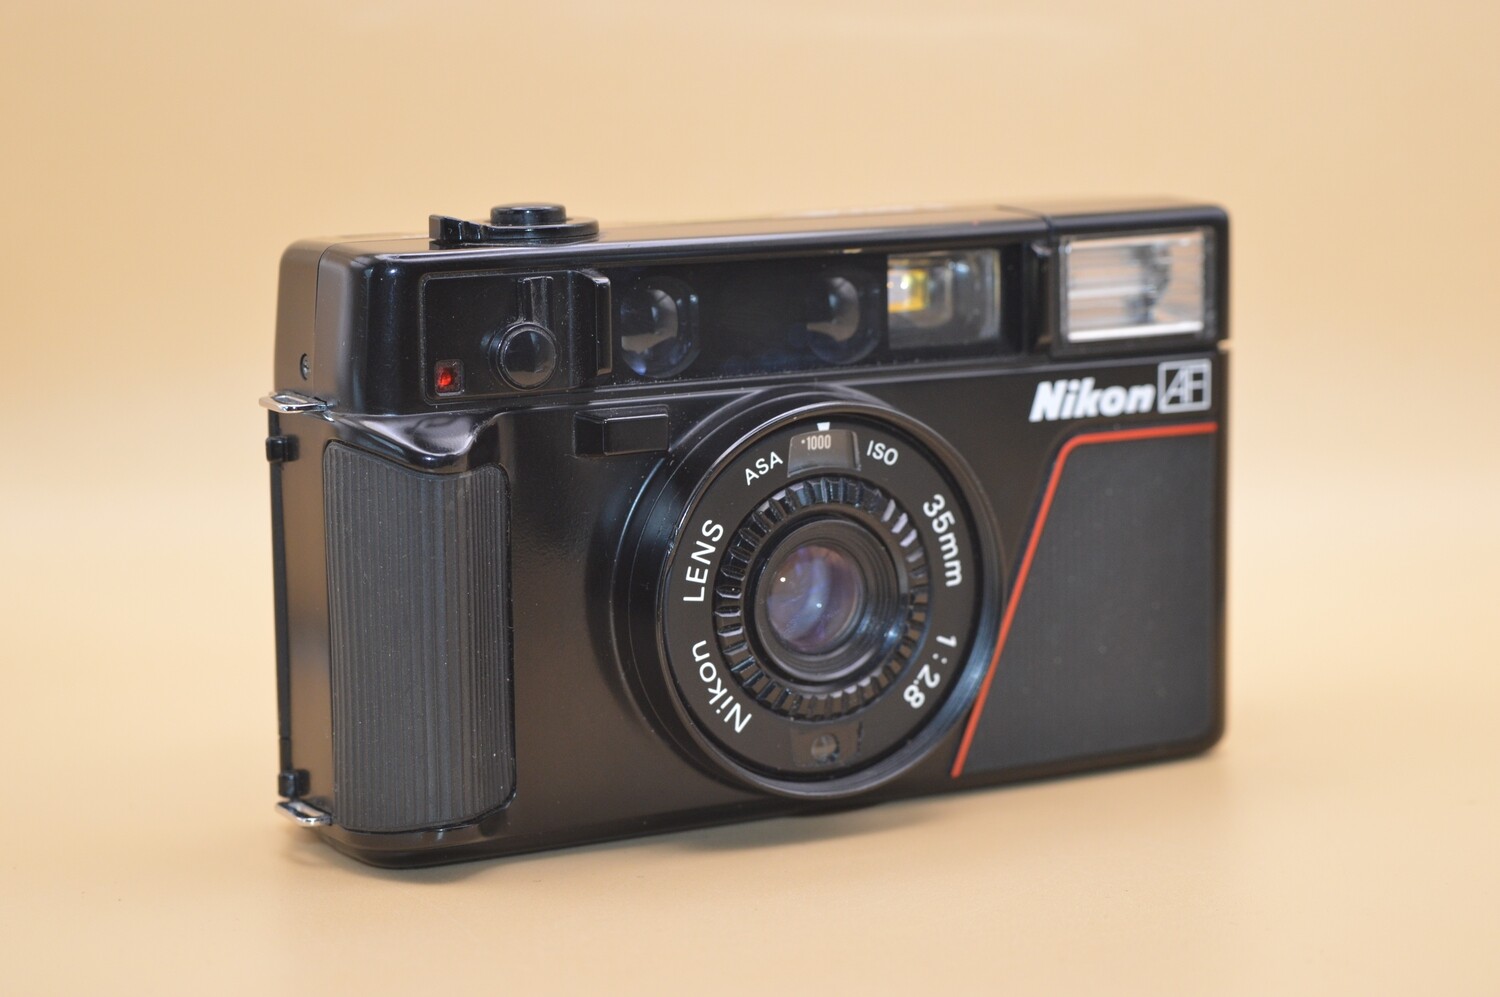 Nikon L35 AF Camera 1000 ISO Model